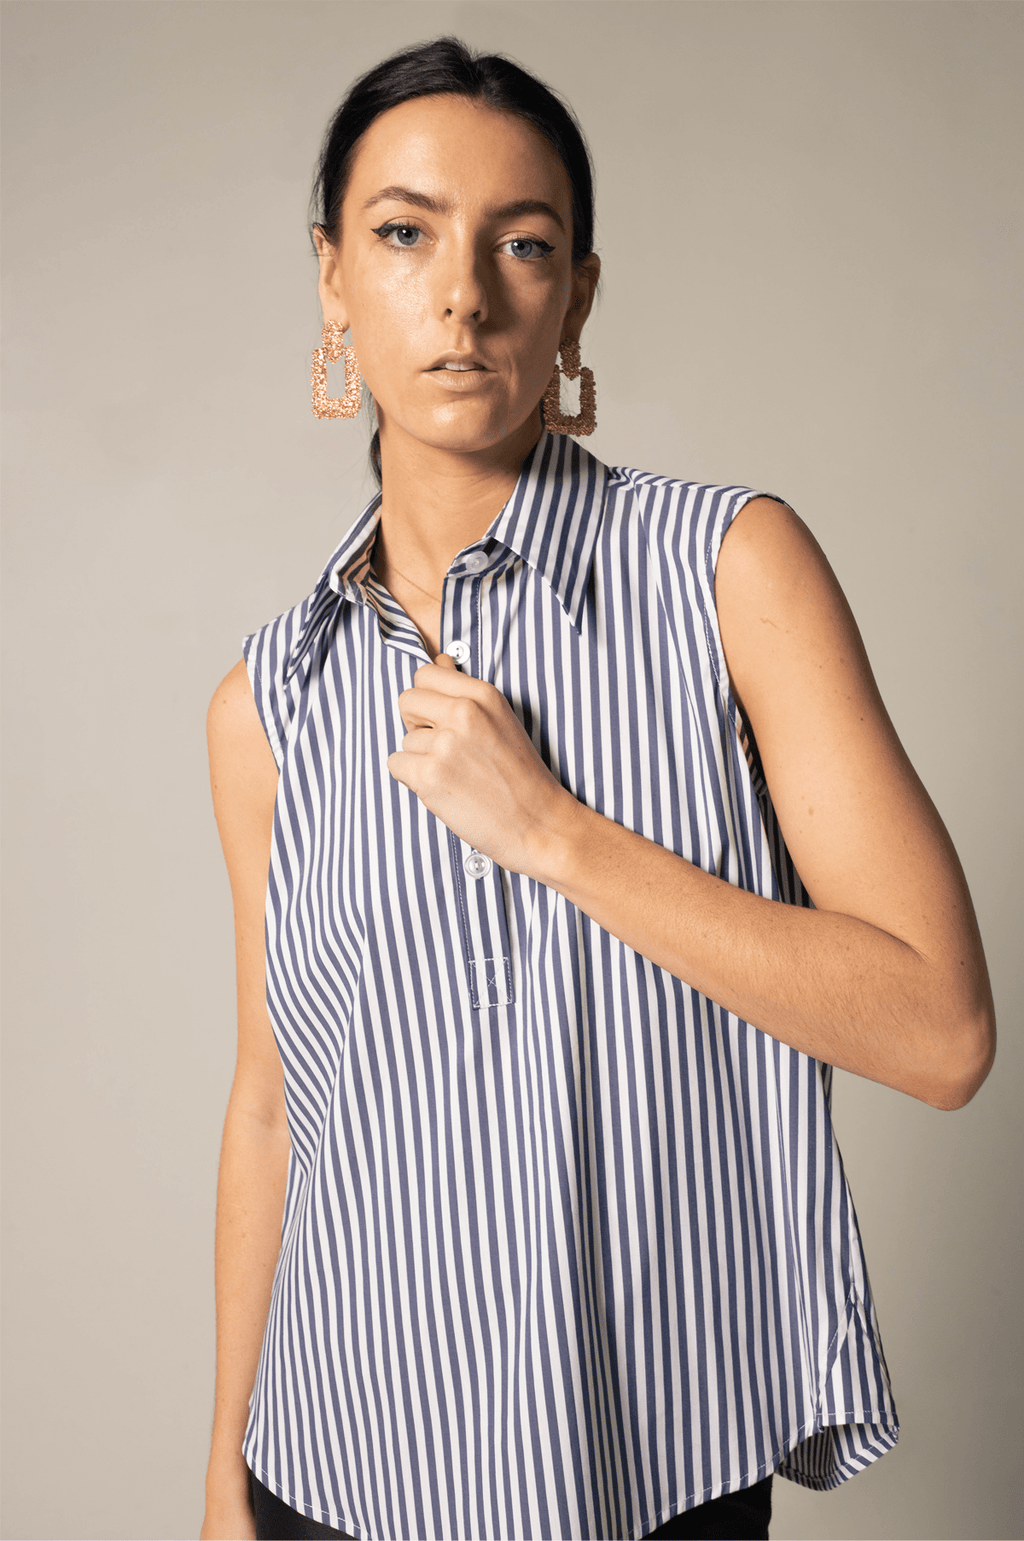 Le Réussi Women's Blouse Italian Cotton Blue Stripe Sleeveless Shirt | Le Réussi